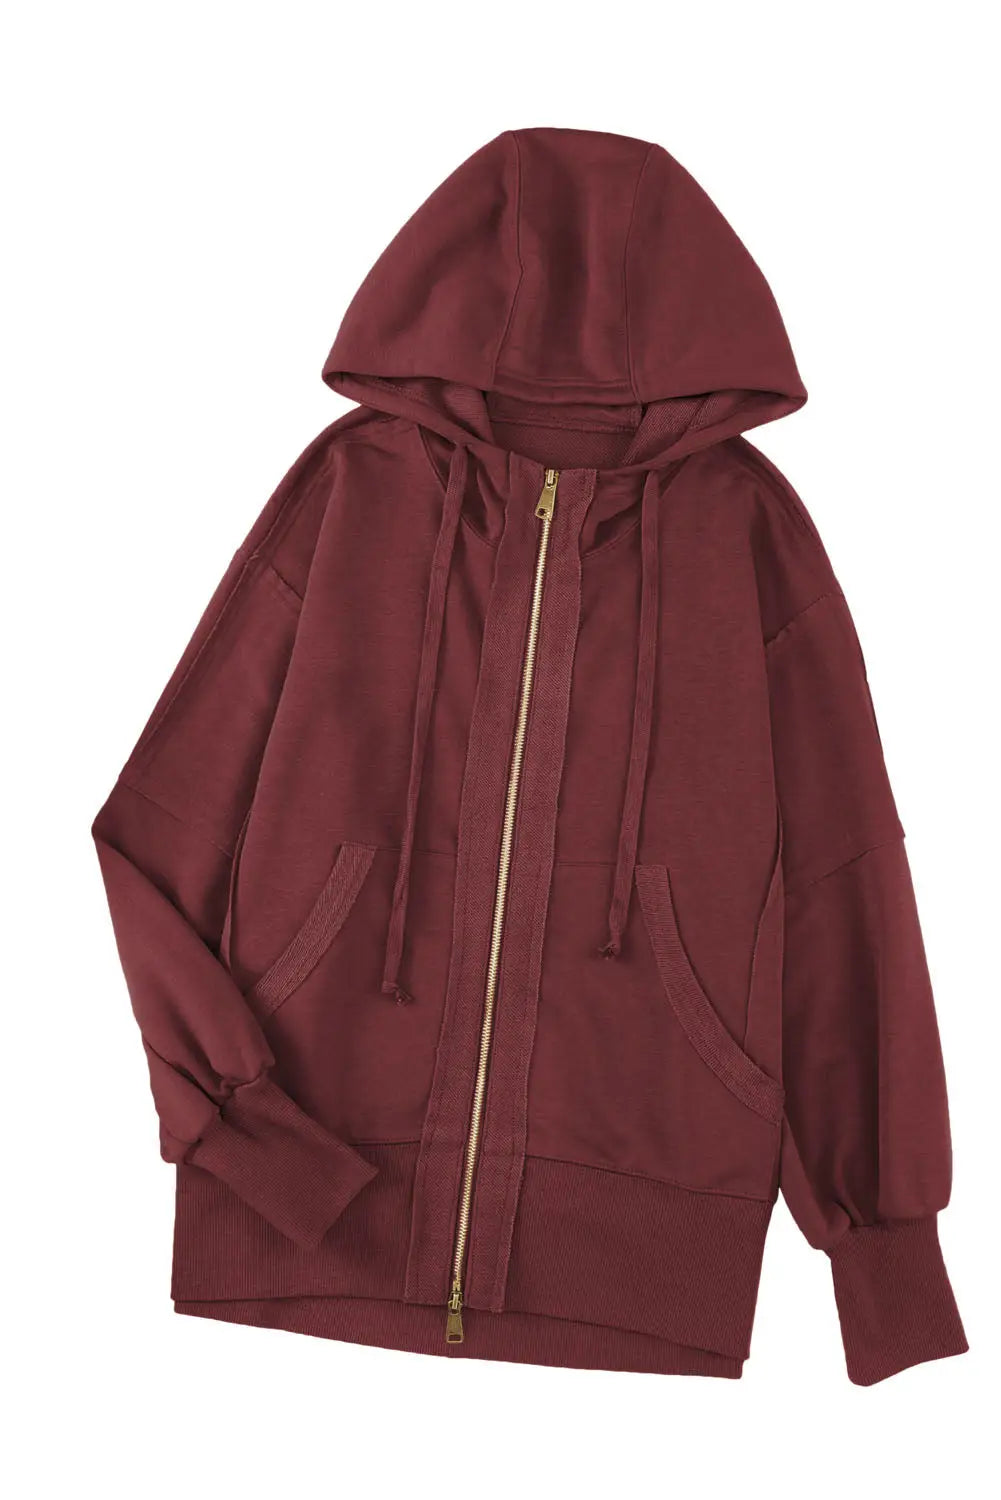 Brown raw edge exposed seam full zip hoodie - sweatshirts & hoodies